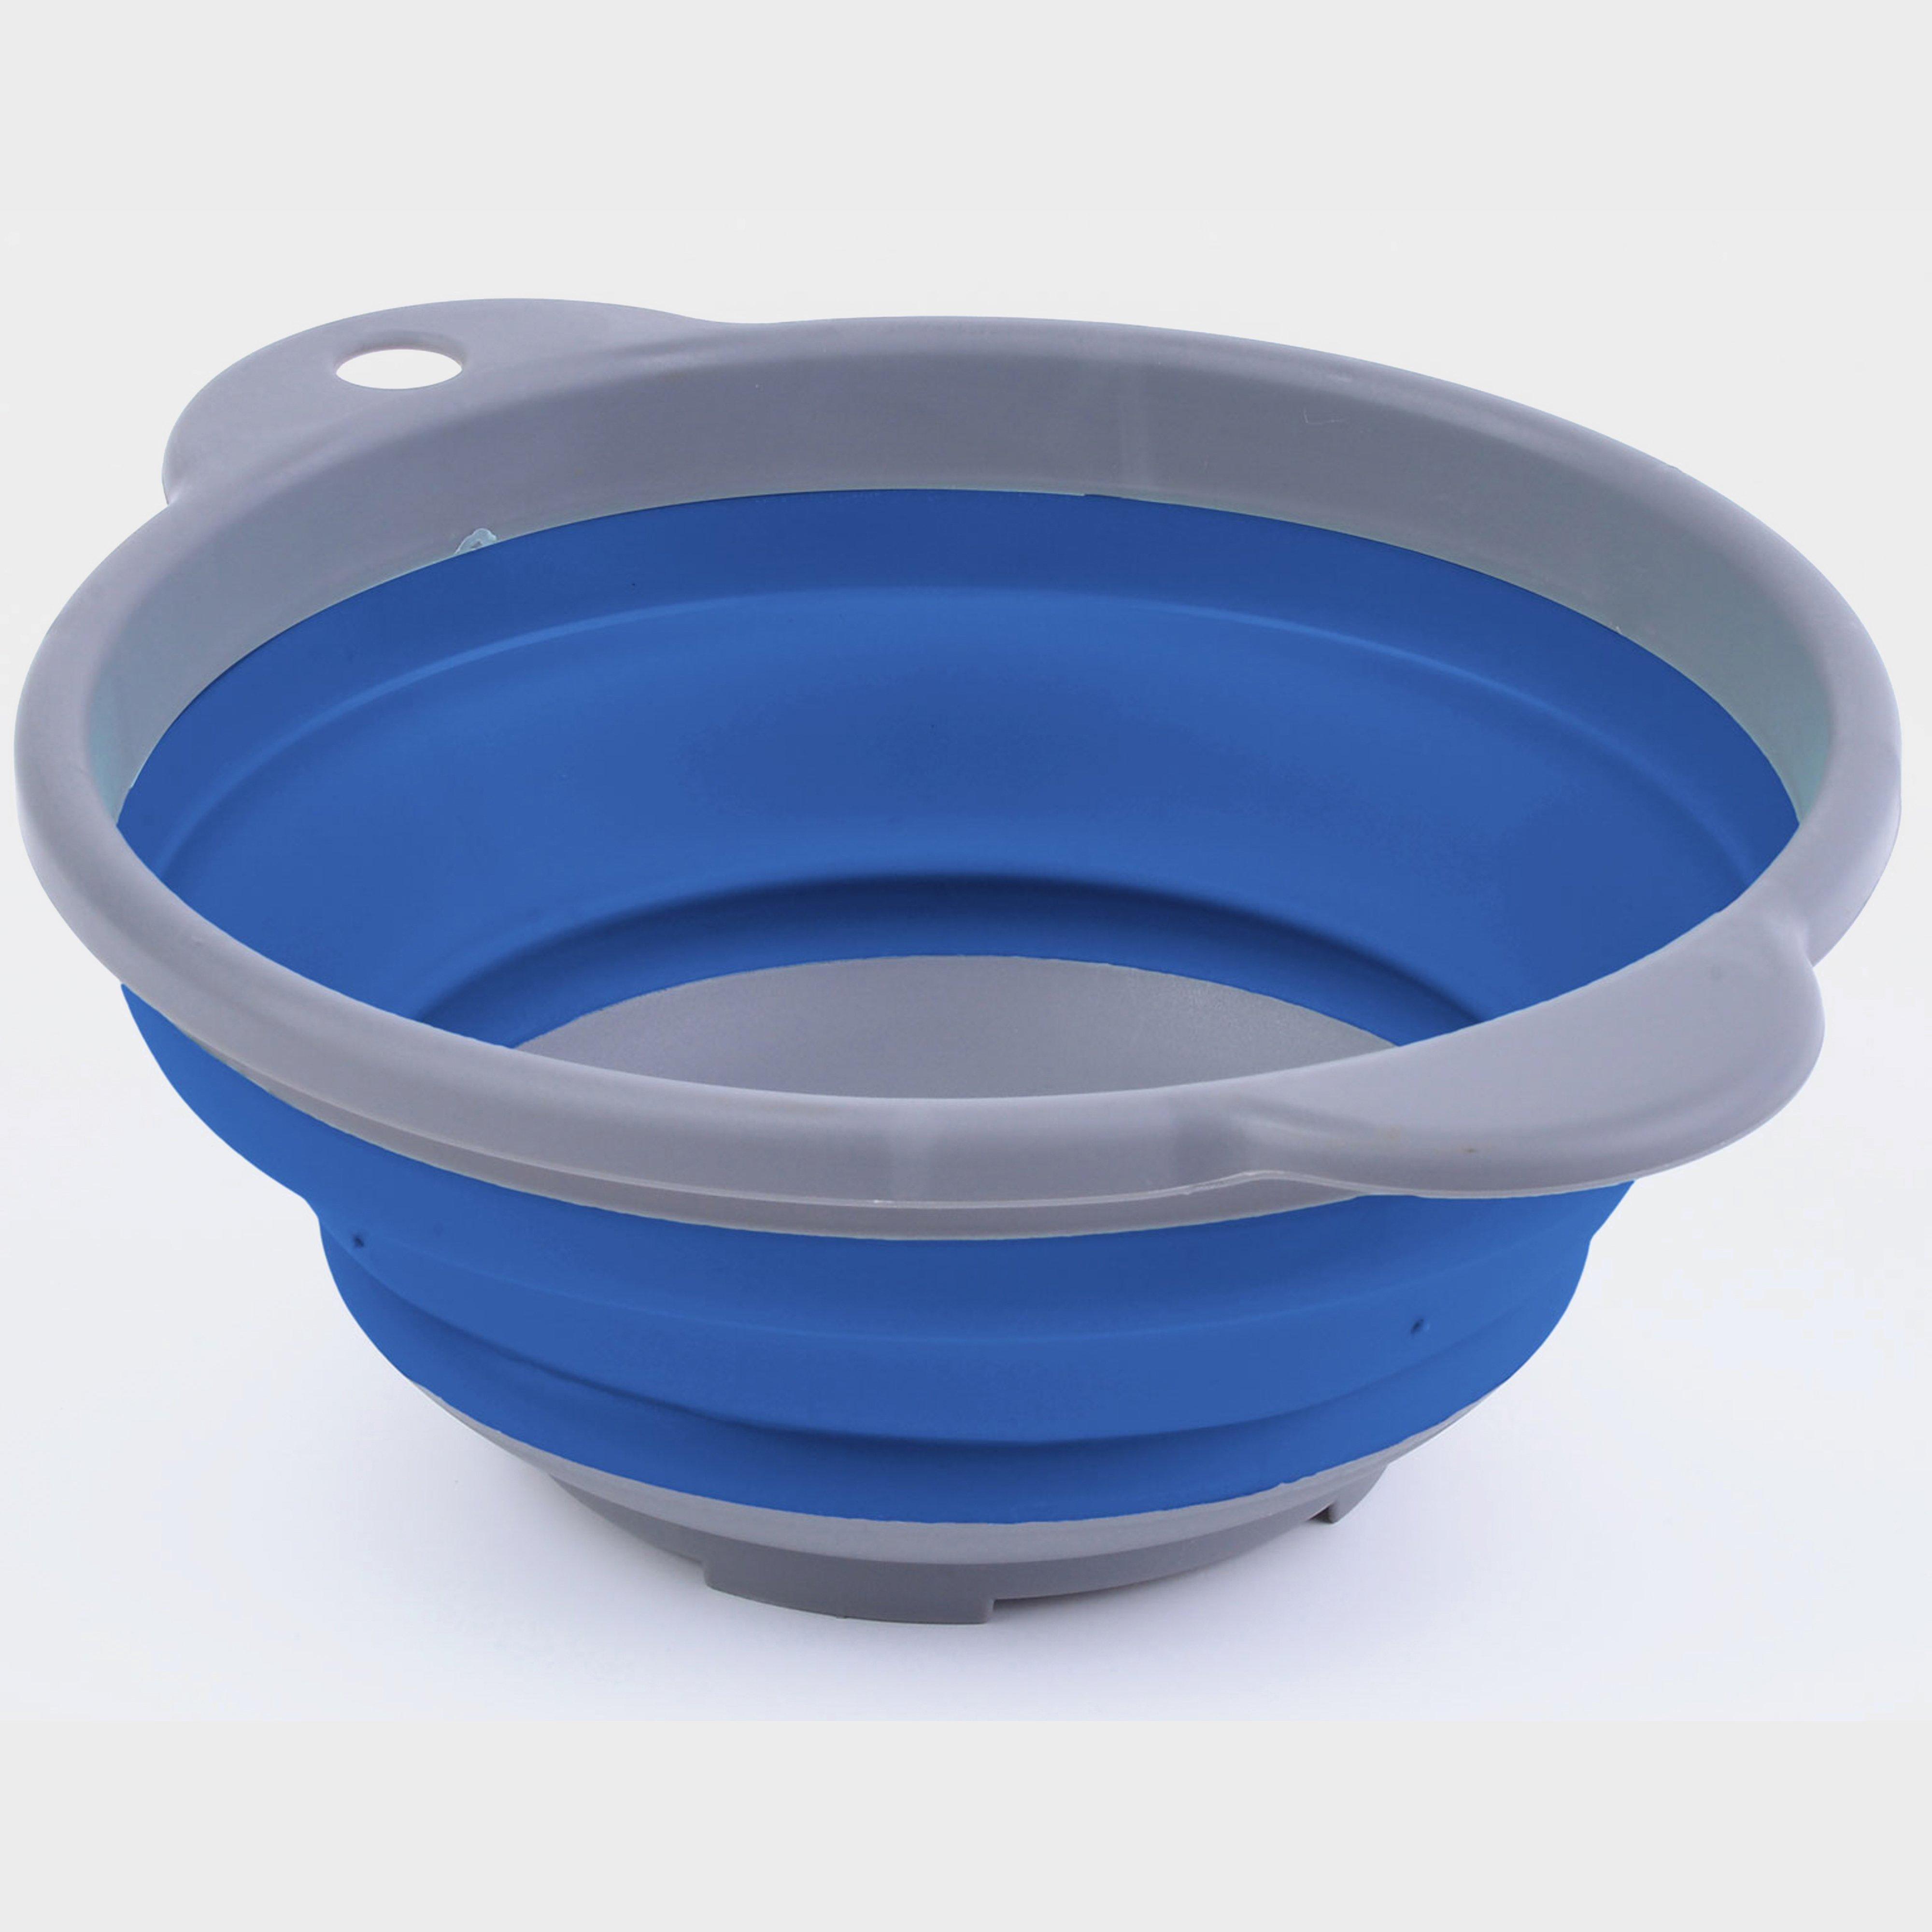 Hi-gear Compact Folding Bowl - Blue/grey  Blue/grey